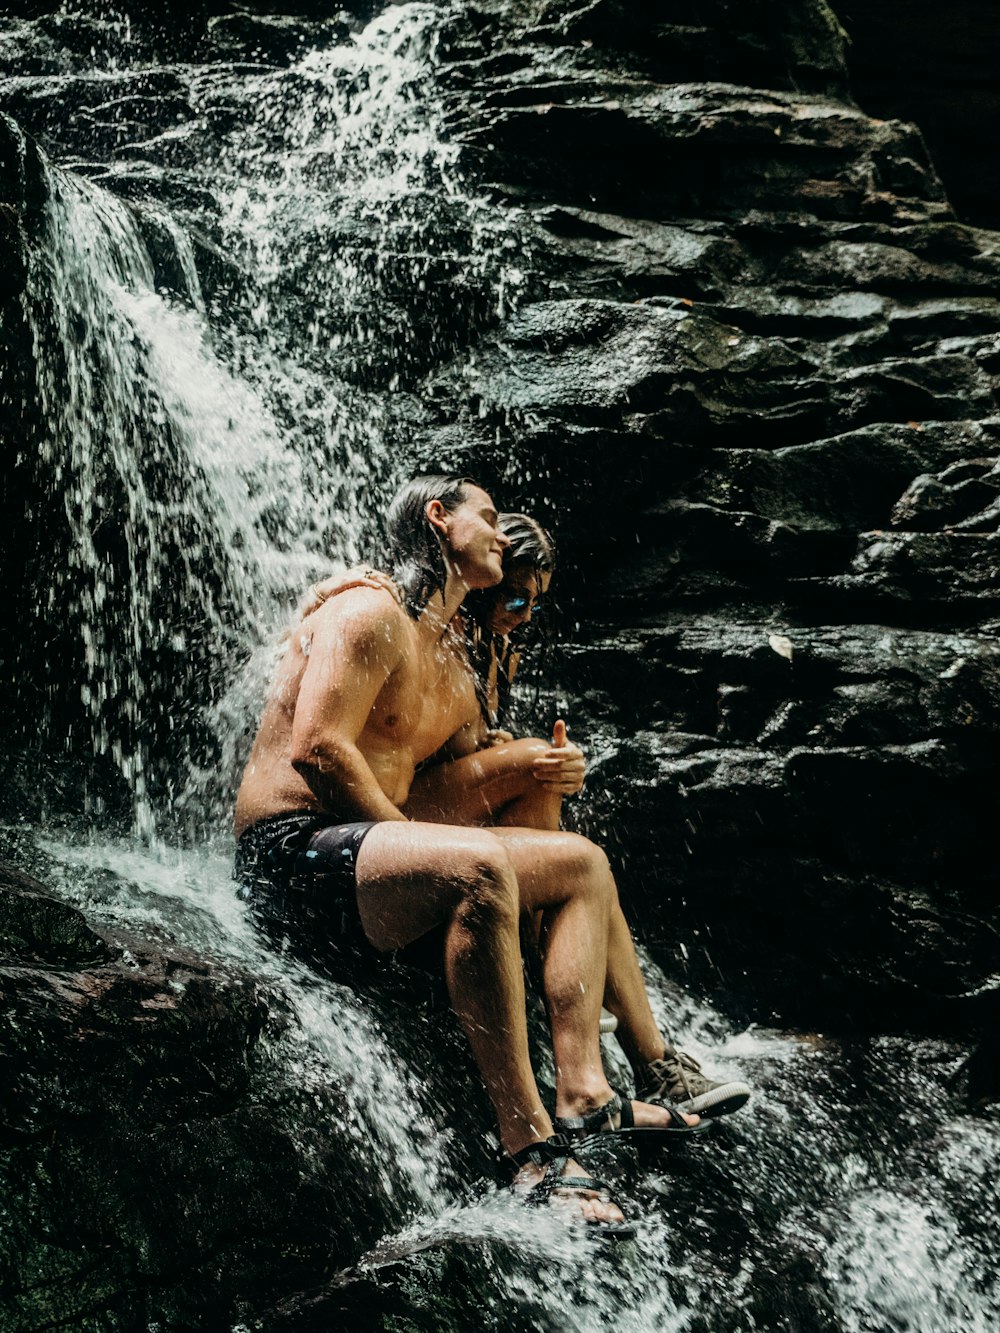 Frau und Mann sitzen auf dem Wasserfallfelsen